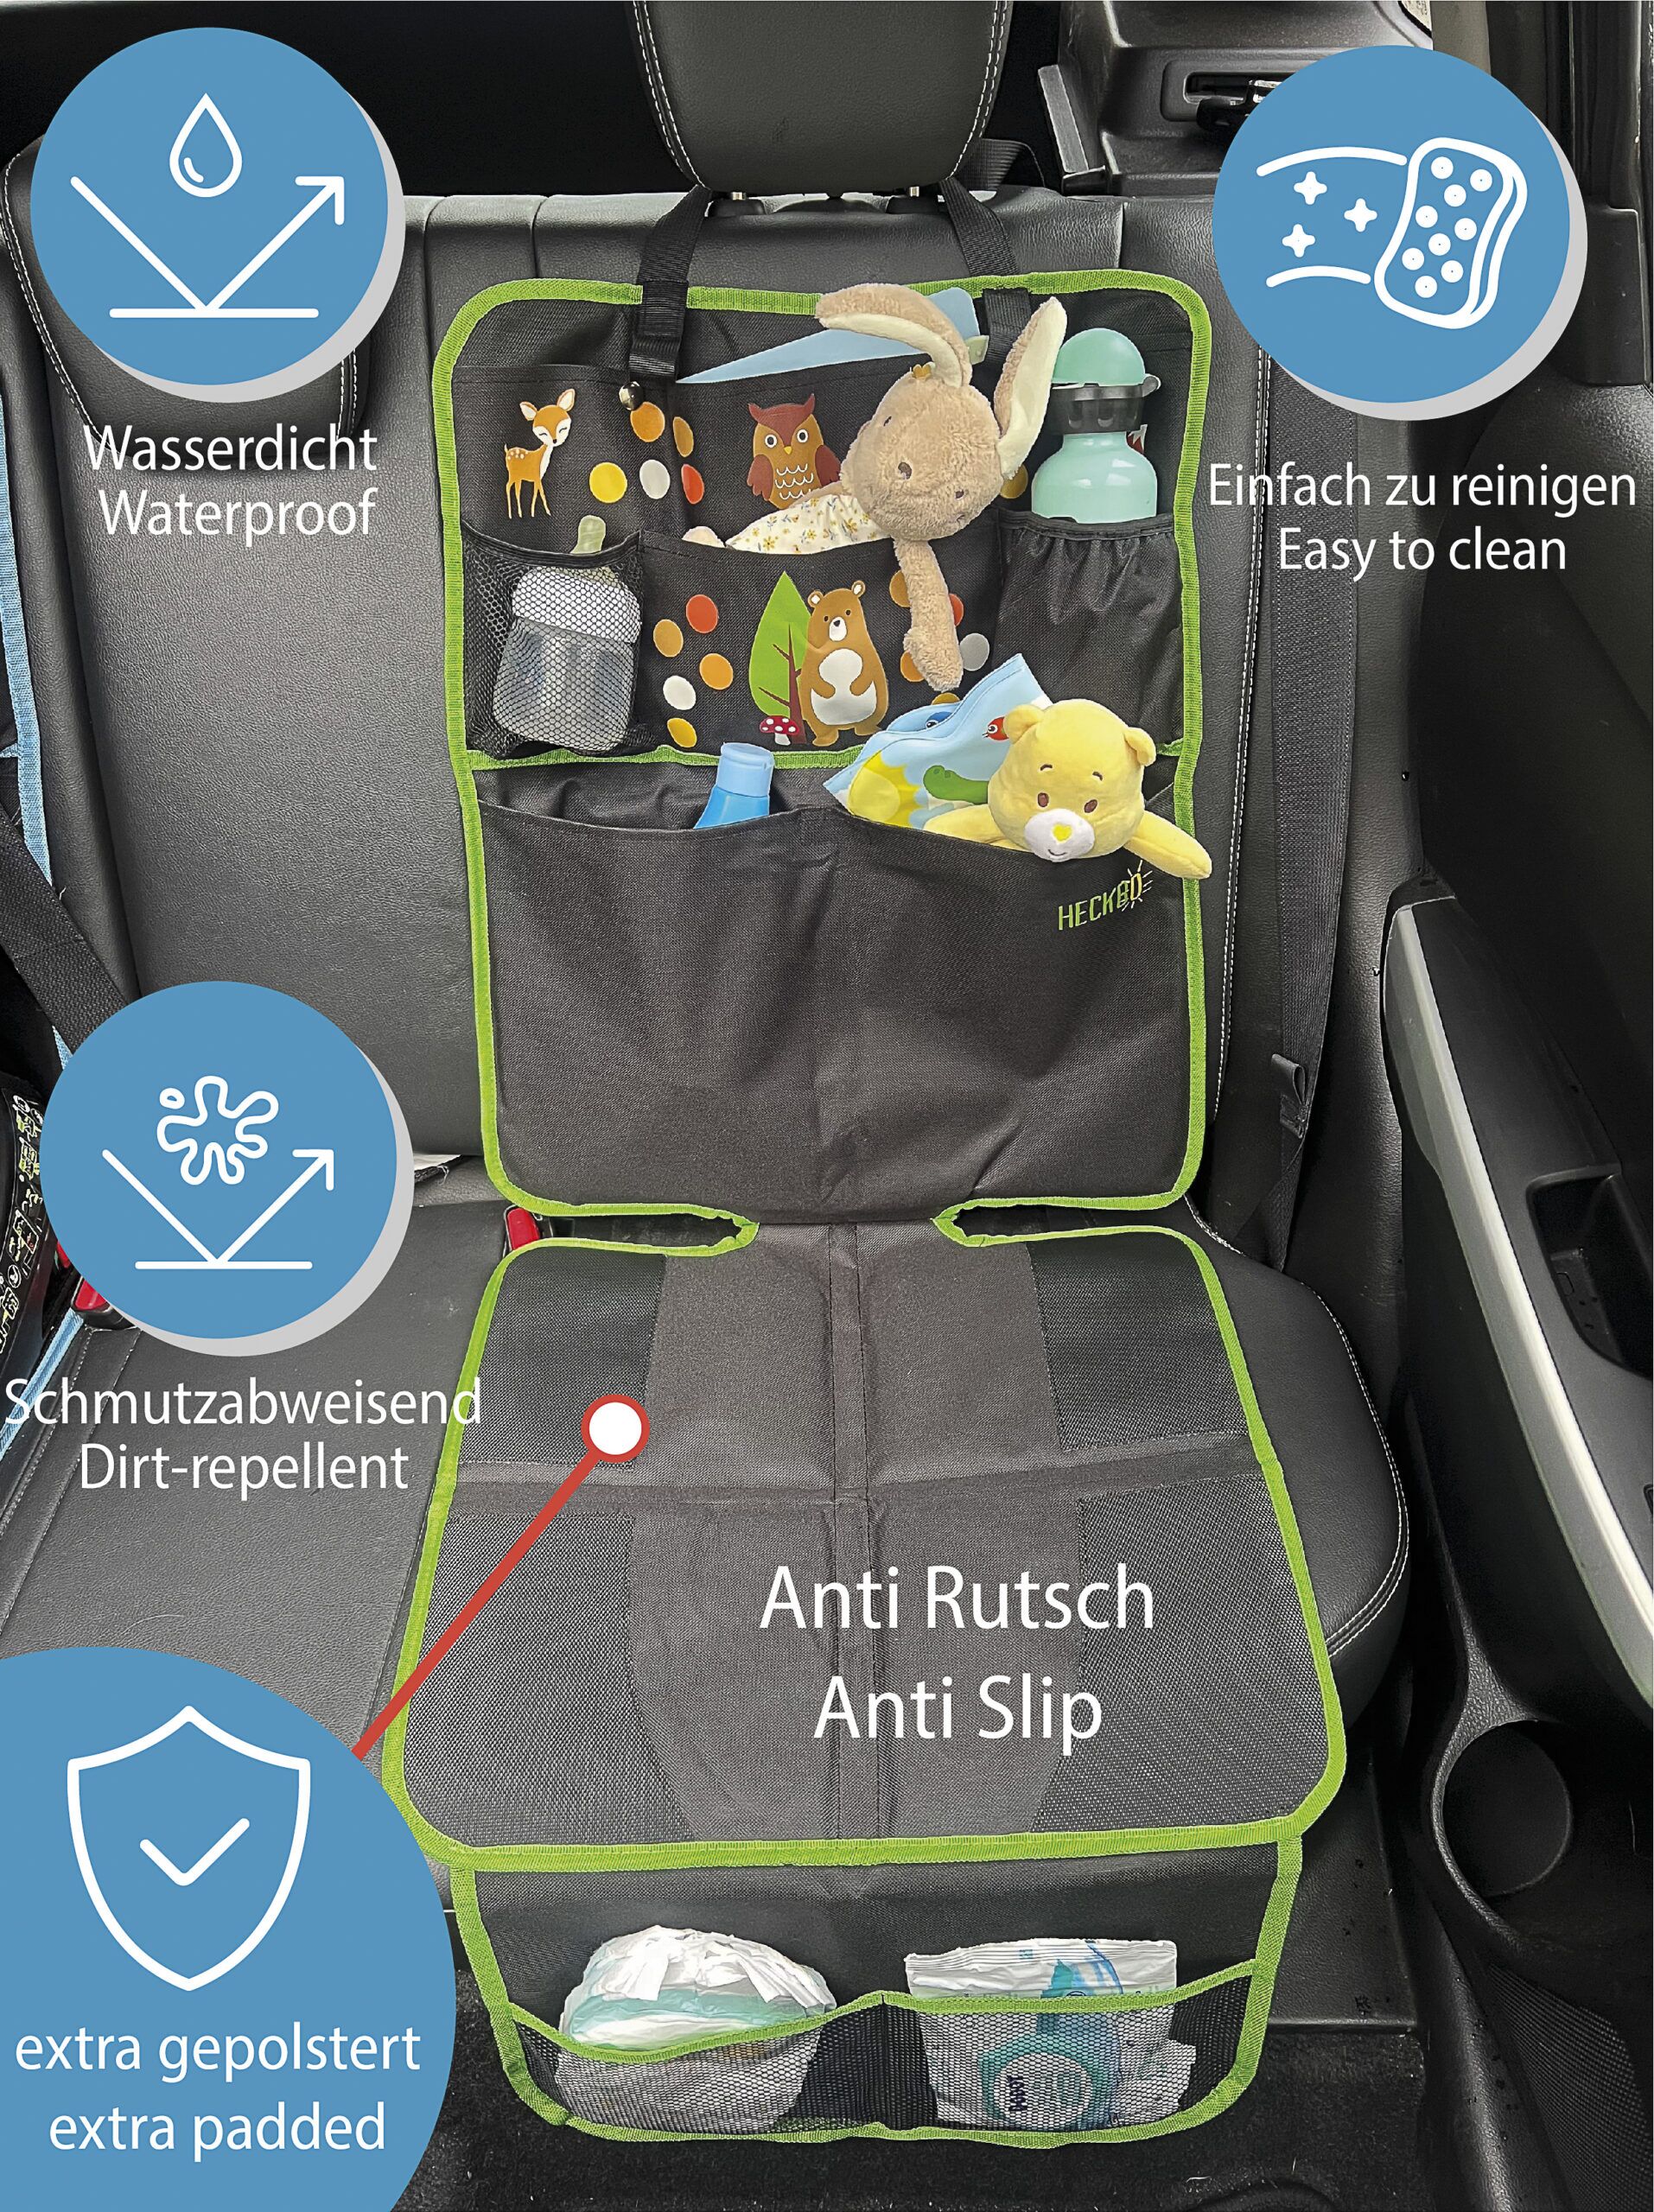 AresKo Autositzauflage, Kindersitzunterlage mit Schaumstoff